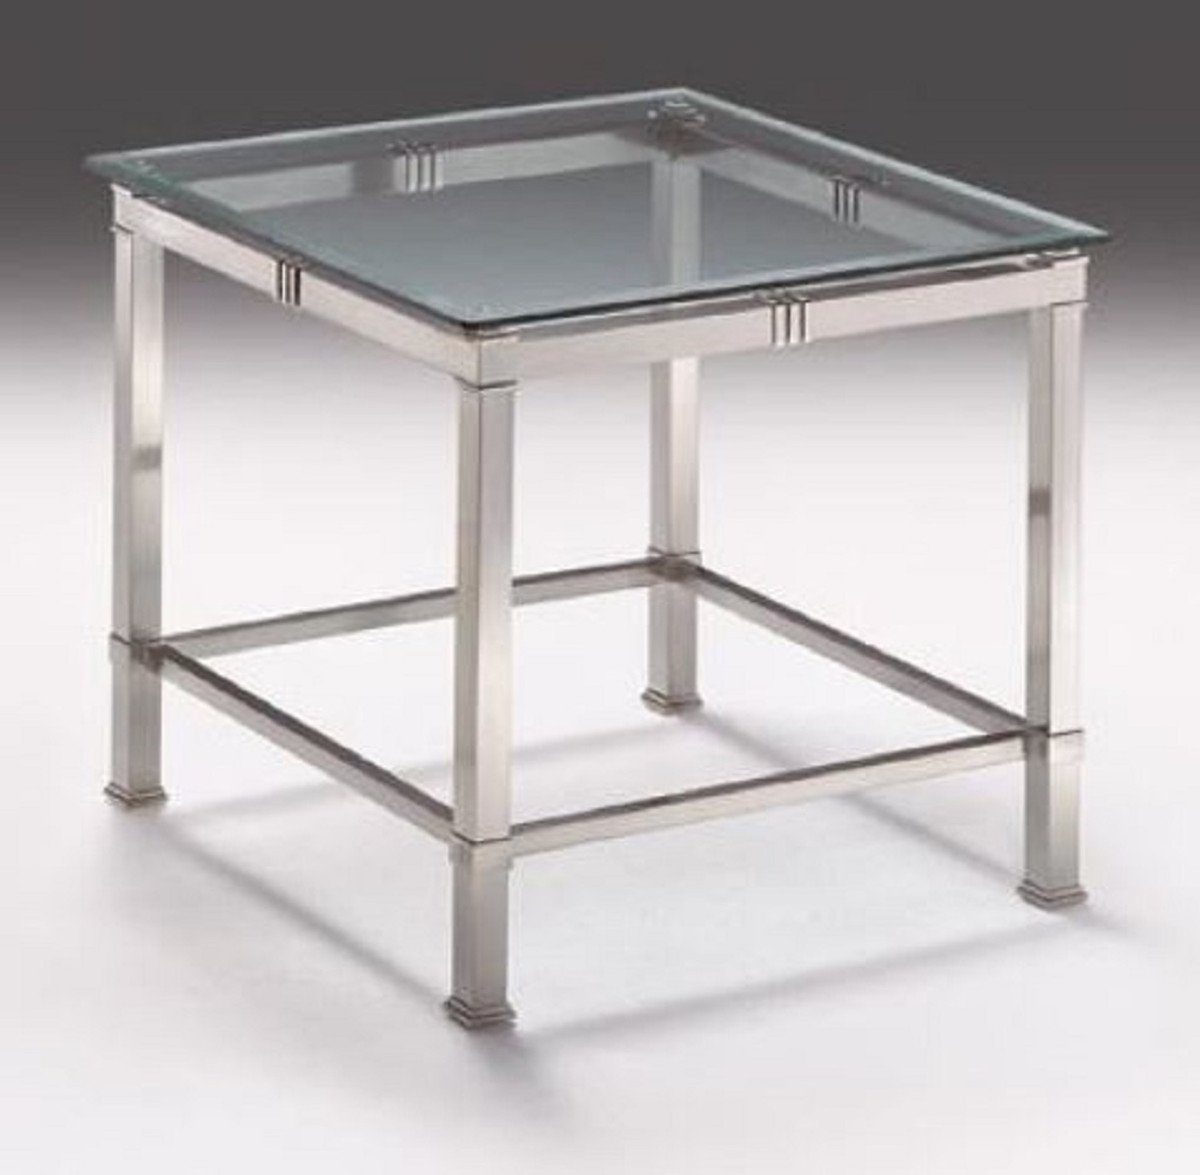 Casa Padrino Beistelltisch Luxus Beistelltisch Silber 60 x 60 x H. 48 cm - Quadratischer Messing Tisch mit Glasplatte - Luxus Möbel | Ablagetische